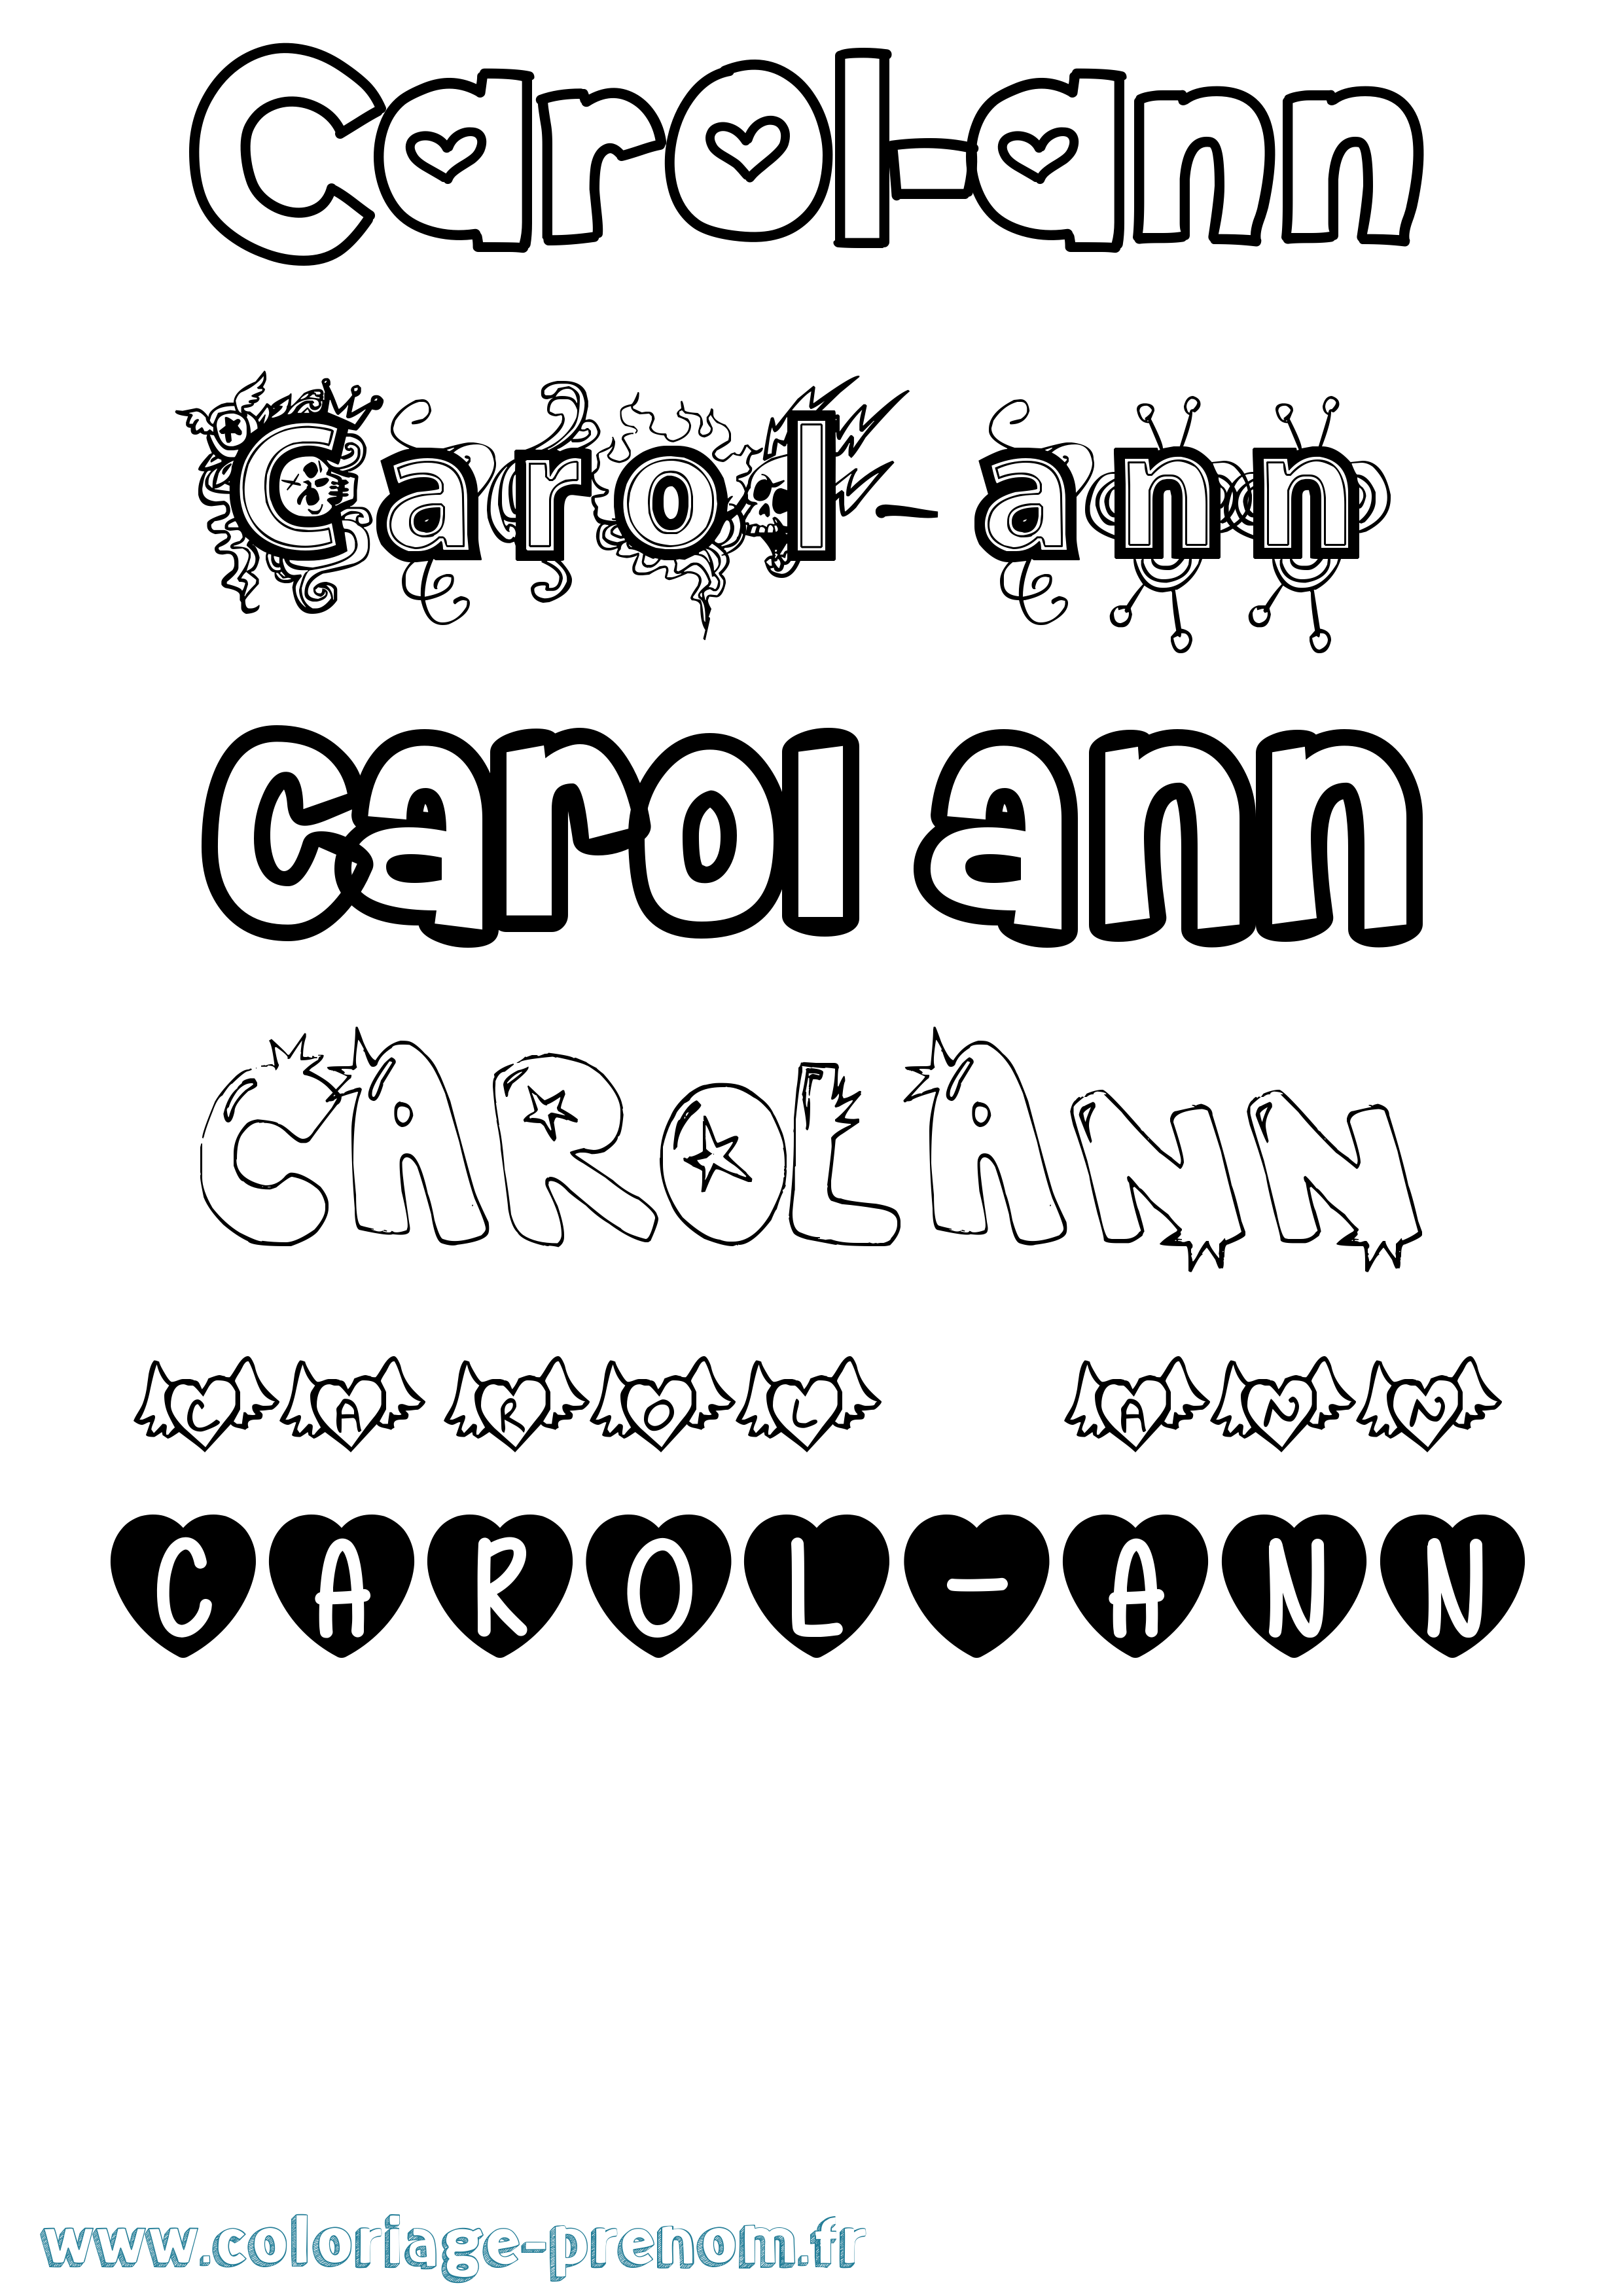 Coloriage du prénom Carol-ann : à Imprimer ou Télécharger facilement